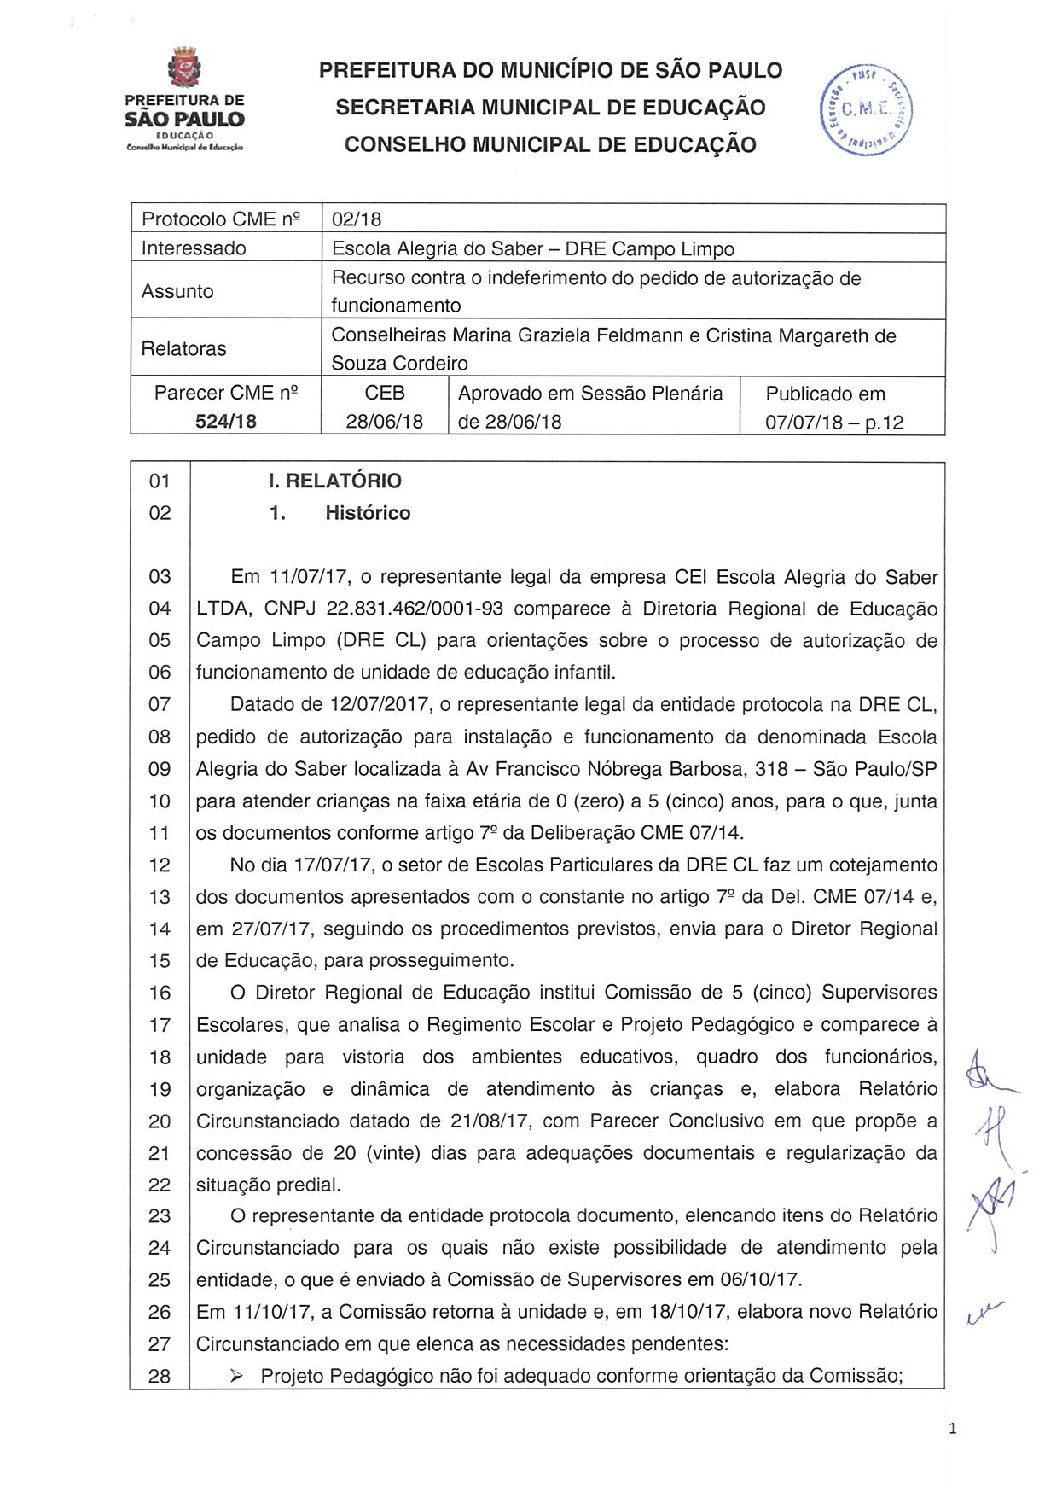 Parecer CME nº 524/2018 - Escola Alegria do Saber (DRE Campo Limpo) - Recurso contra o indeferimento do pedido de autorização de funcionamento